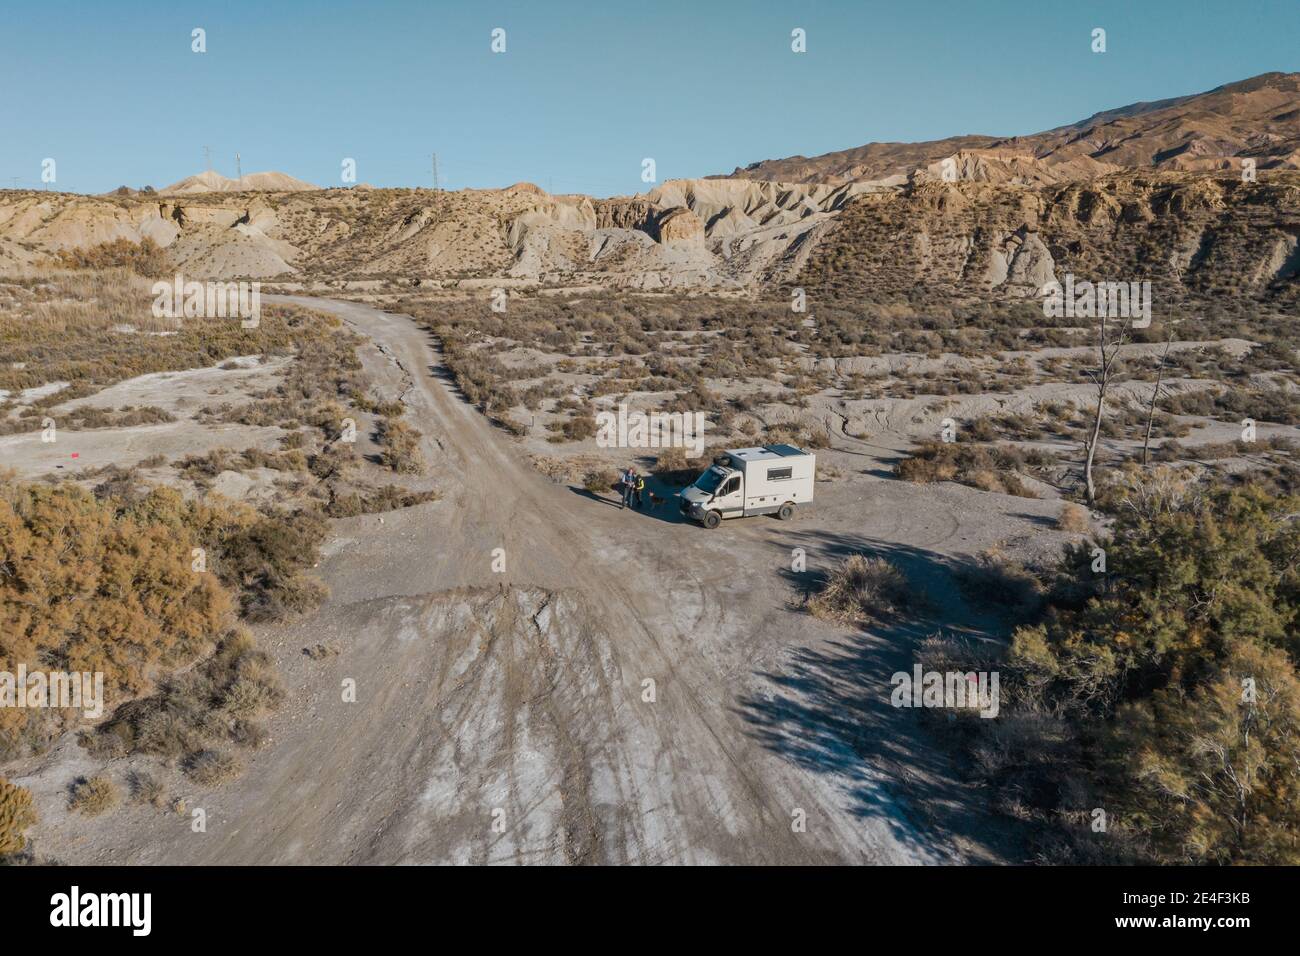 Offroad Camping Auto in der Wüste Tabernas Almeria Spanien Abenteuer Reisen sie nach europa Stockfoto